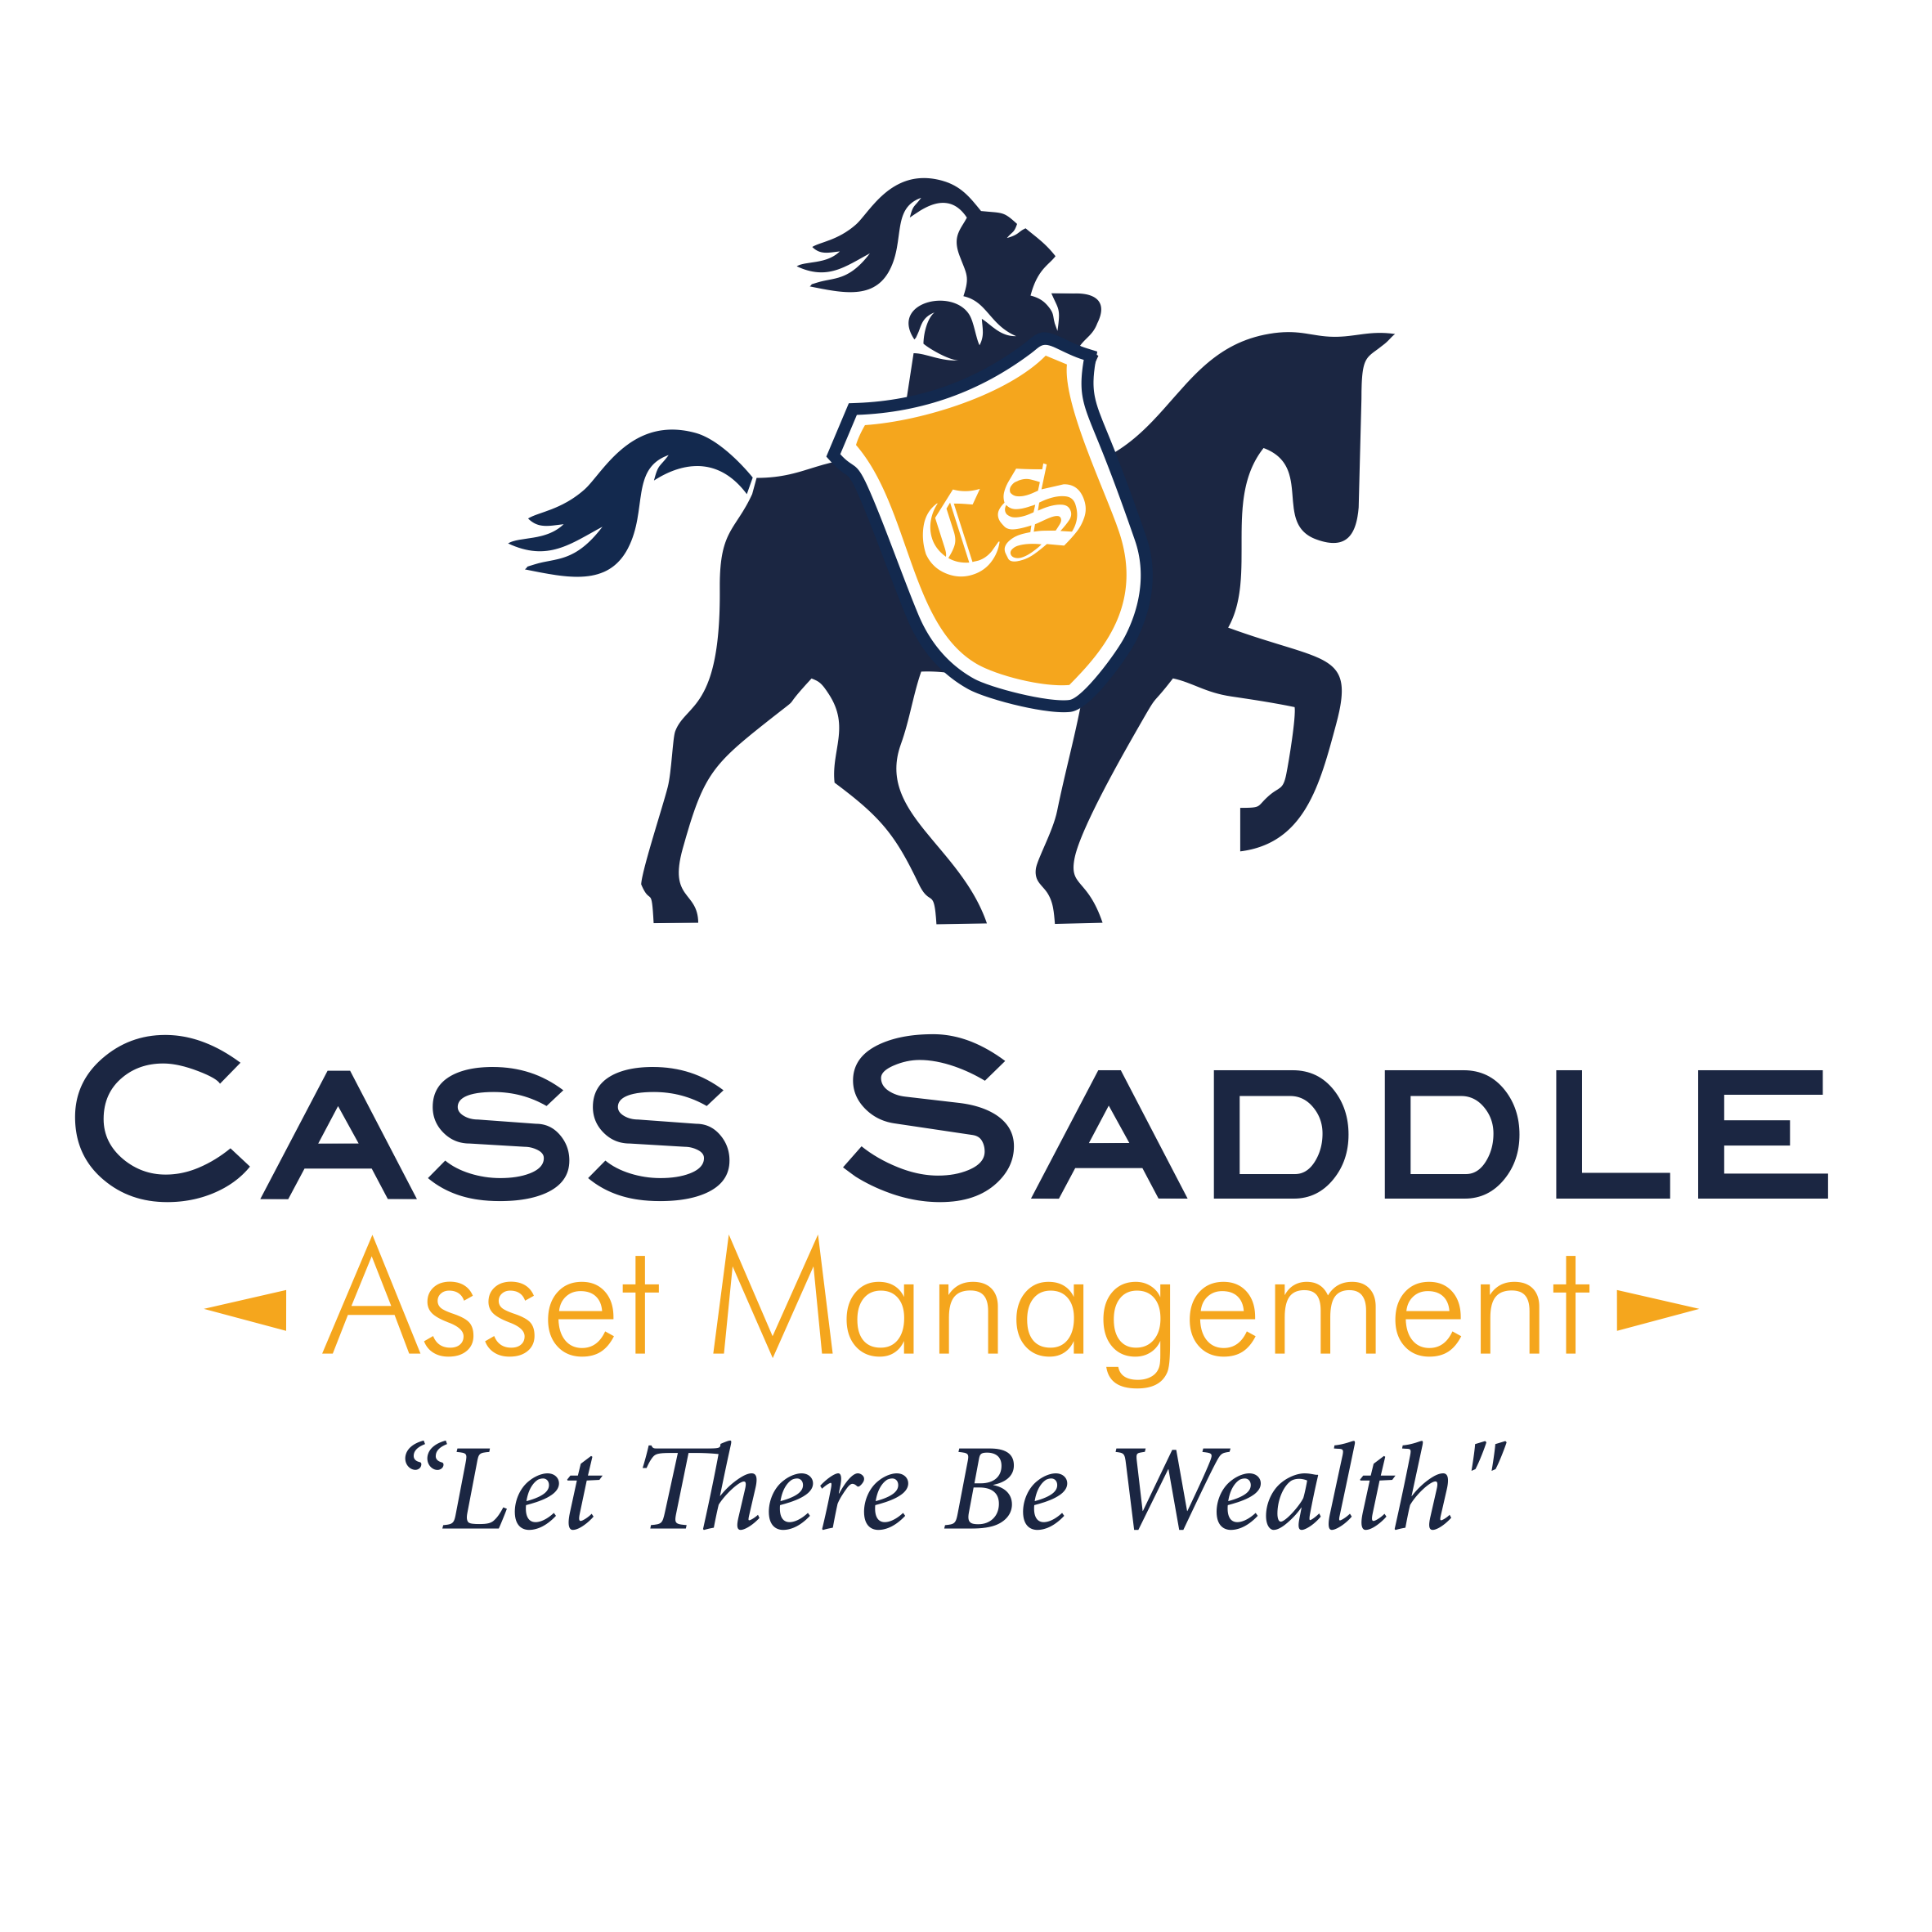 Cass Saddle Asset Management